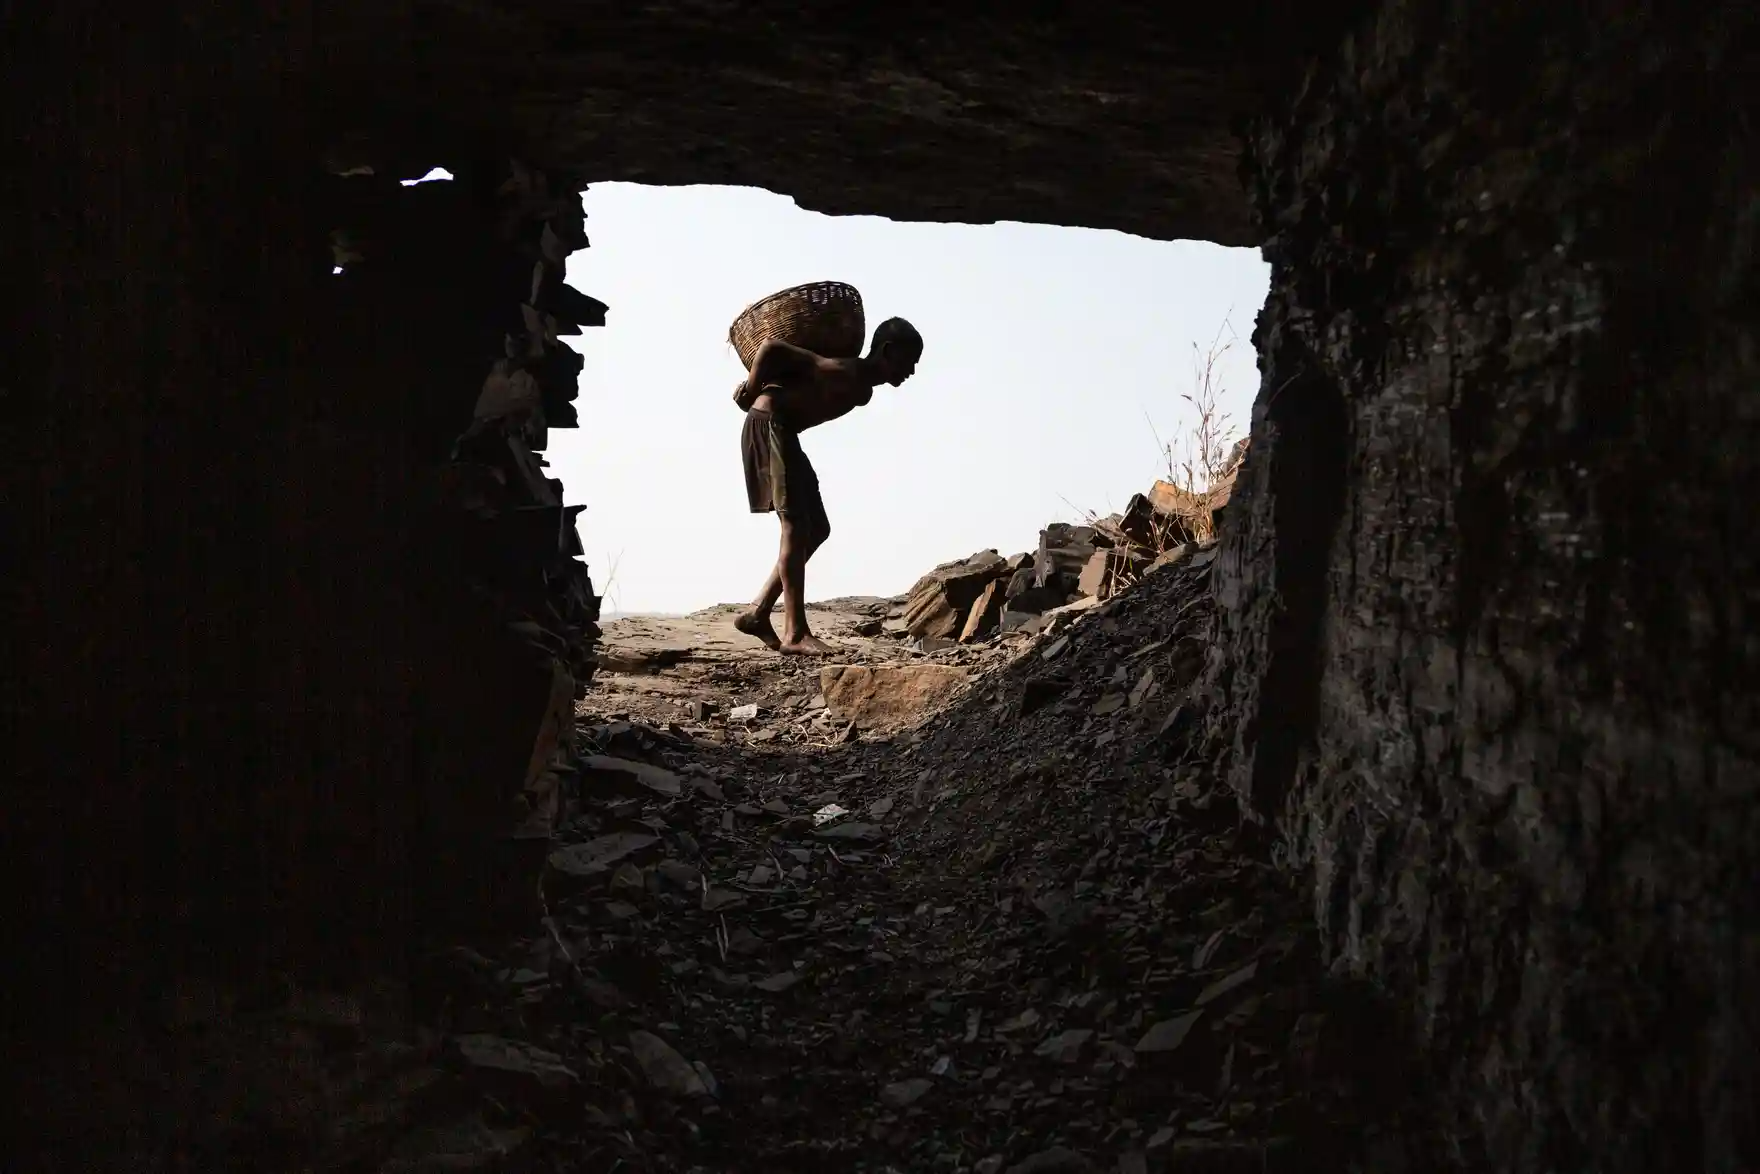 Hiểm họa rình rập giới khai thác than trộm ở Ấn Độ - ảnh 5